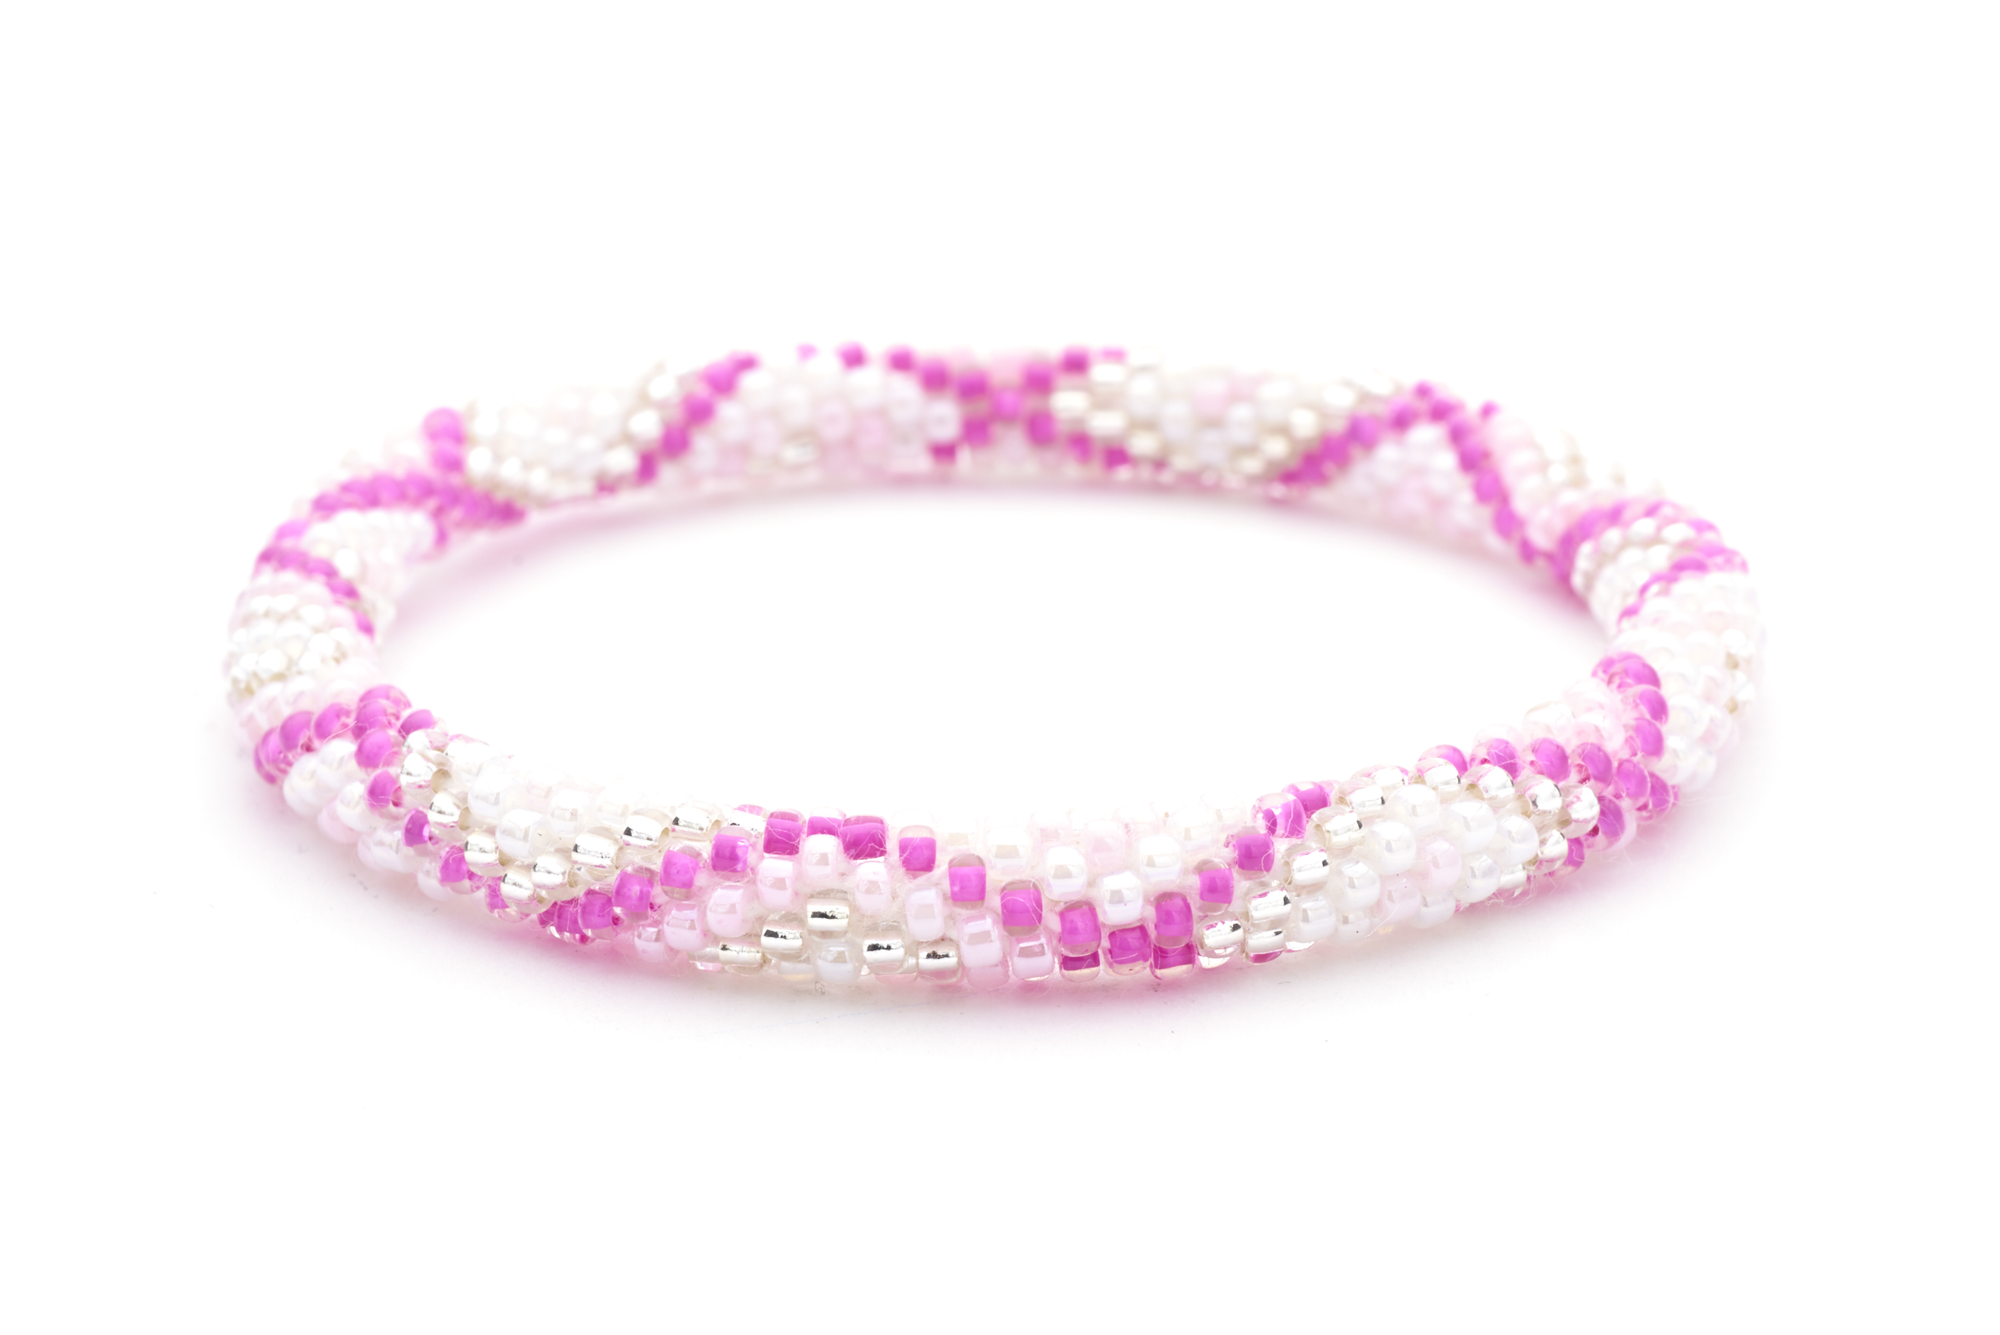 Sashka Co. Extended 8" Bracelet Pink / Clear/ White Pink Ice Bracelet - Extended 8"